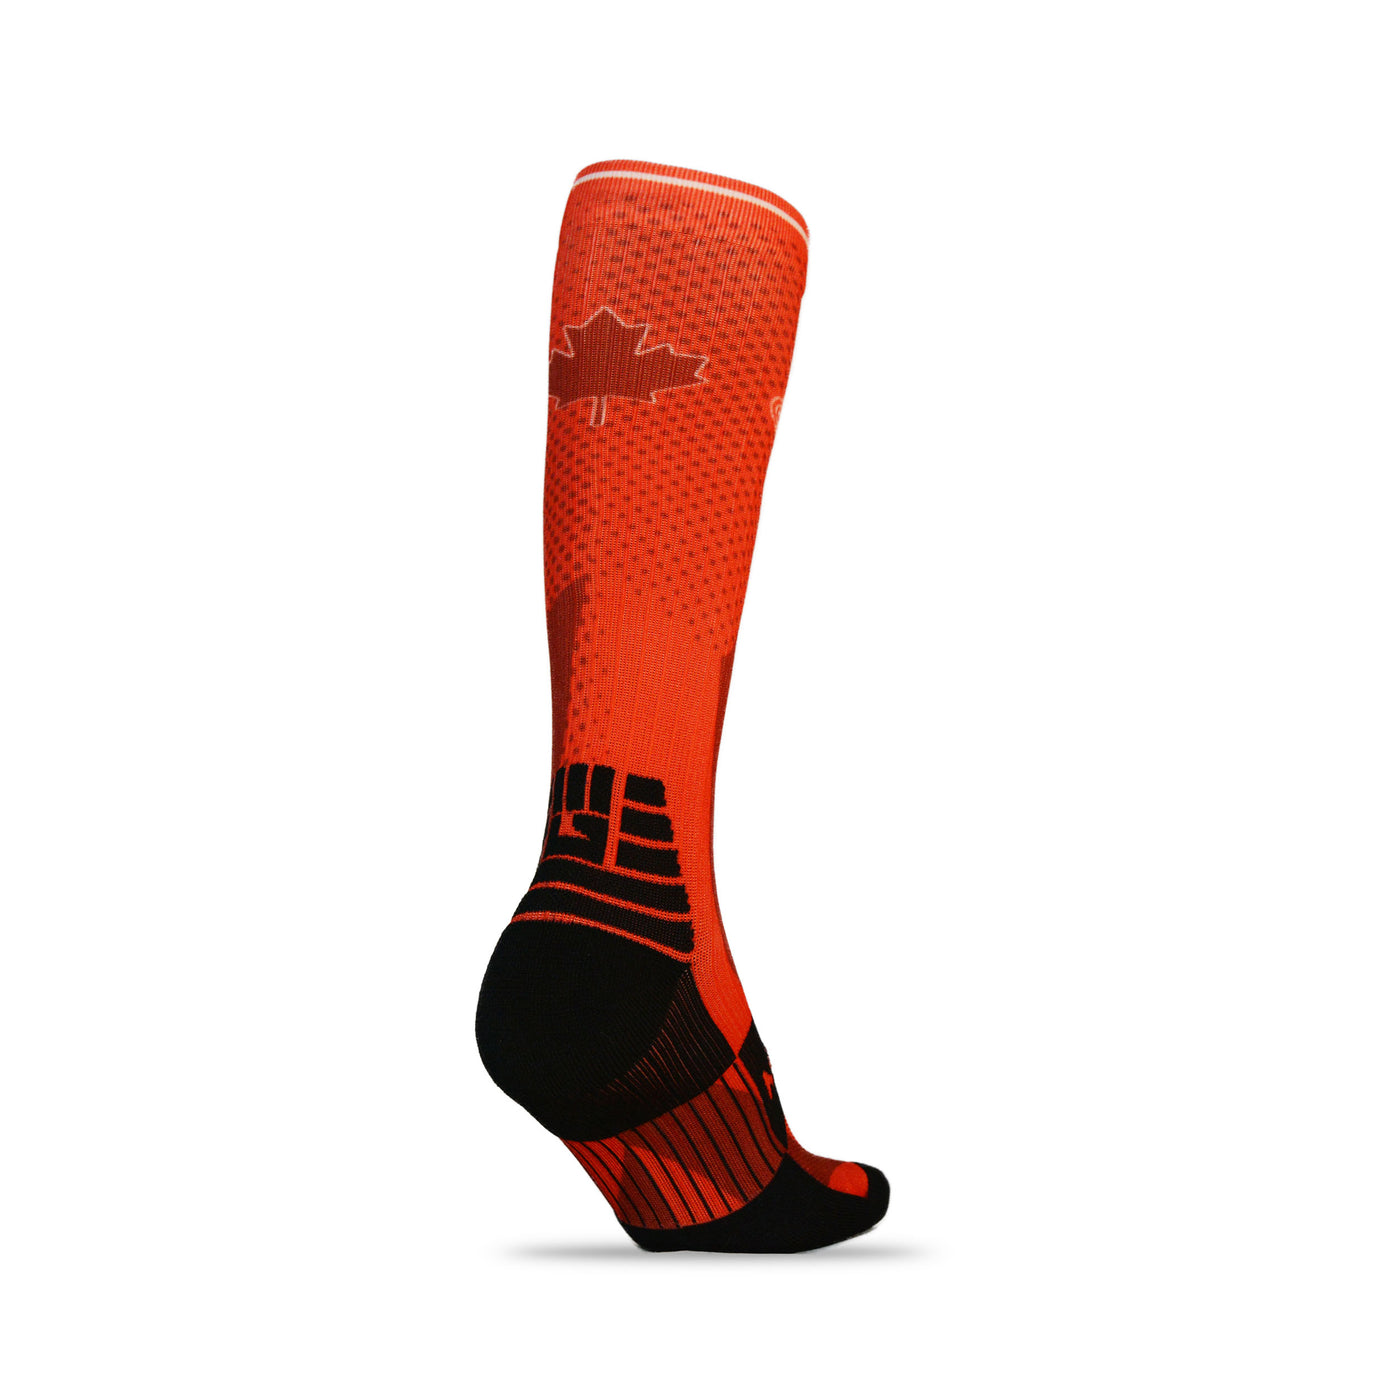 CLEARANCE ITEM - MudGear Custom Canada Tall Compression Socks (1 Pair)